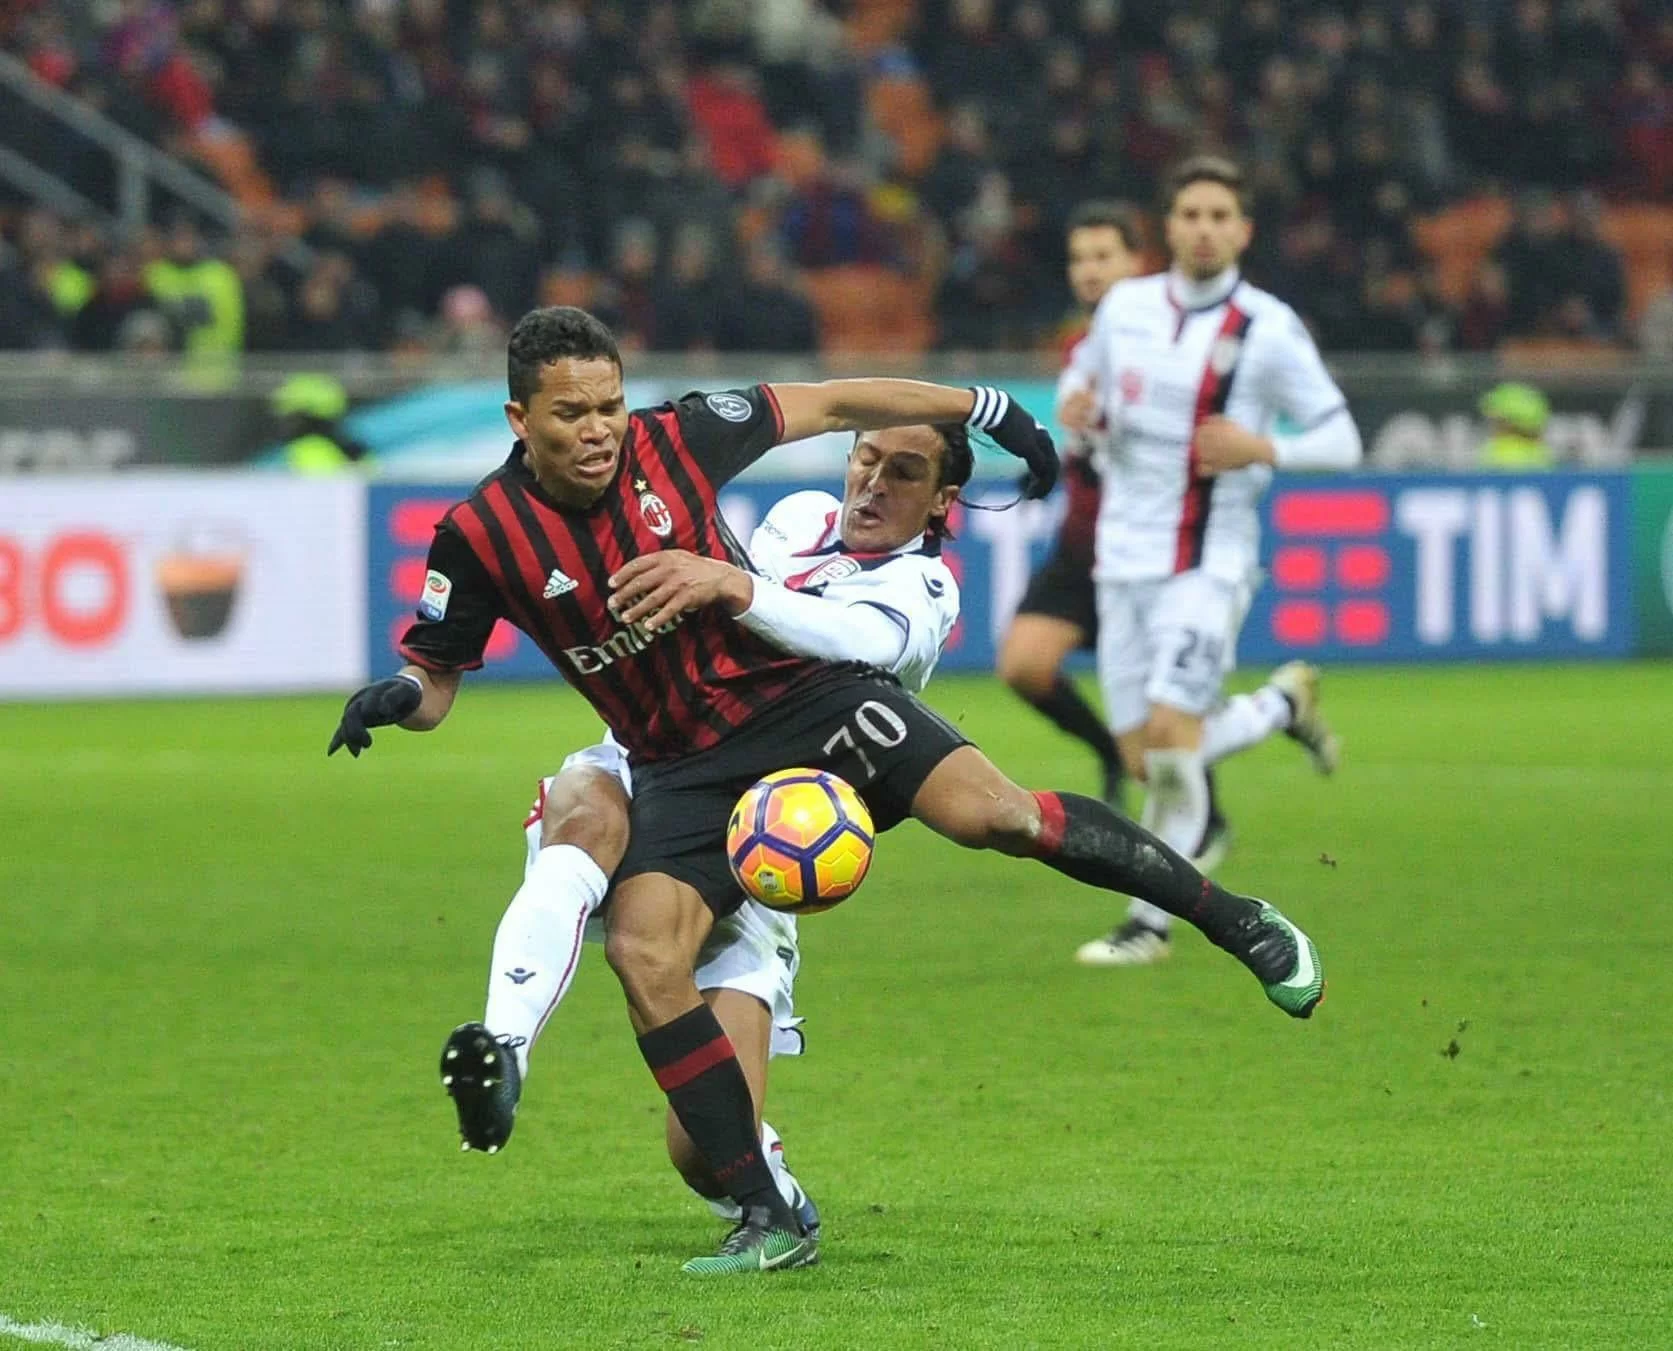 Milan-Chievo: Bacca sbaglia un rigore. Primo penalty fallito in Serie A dal colombiano